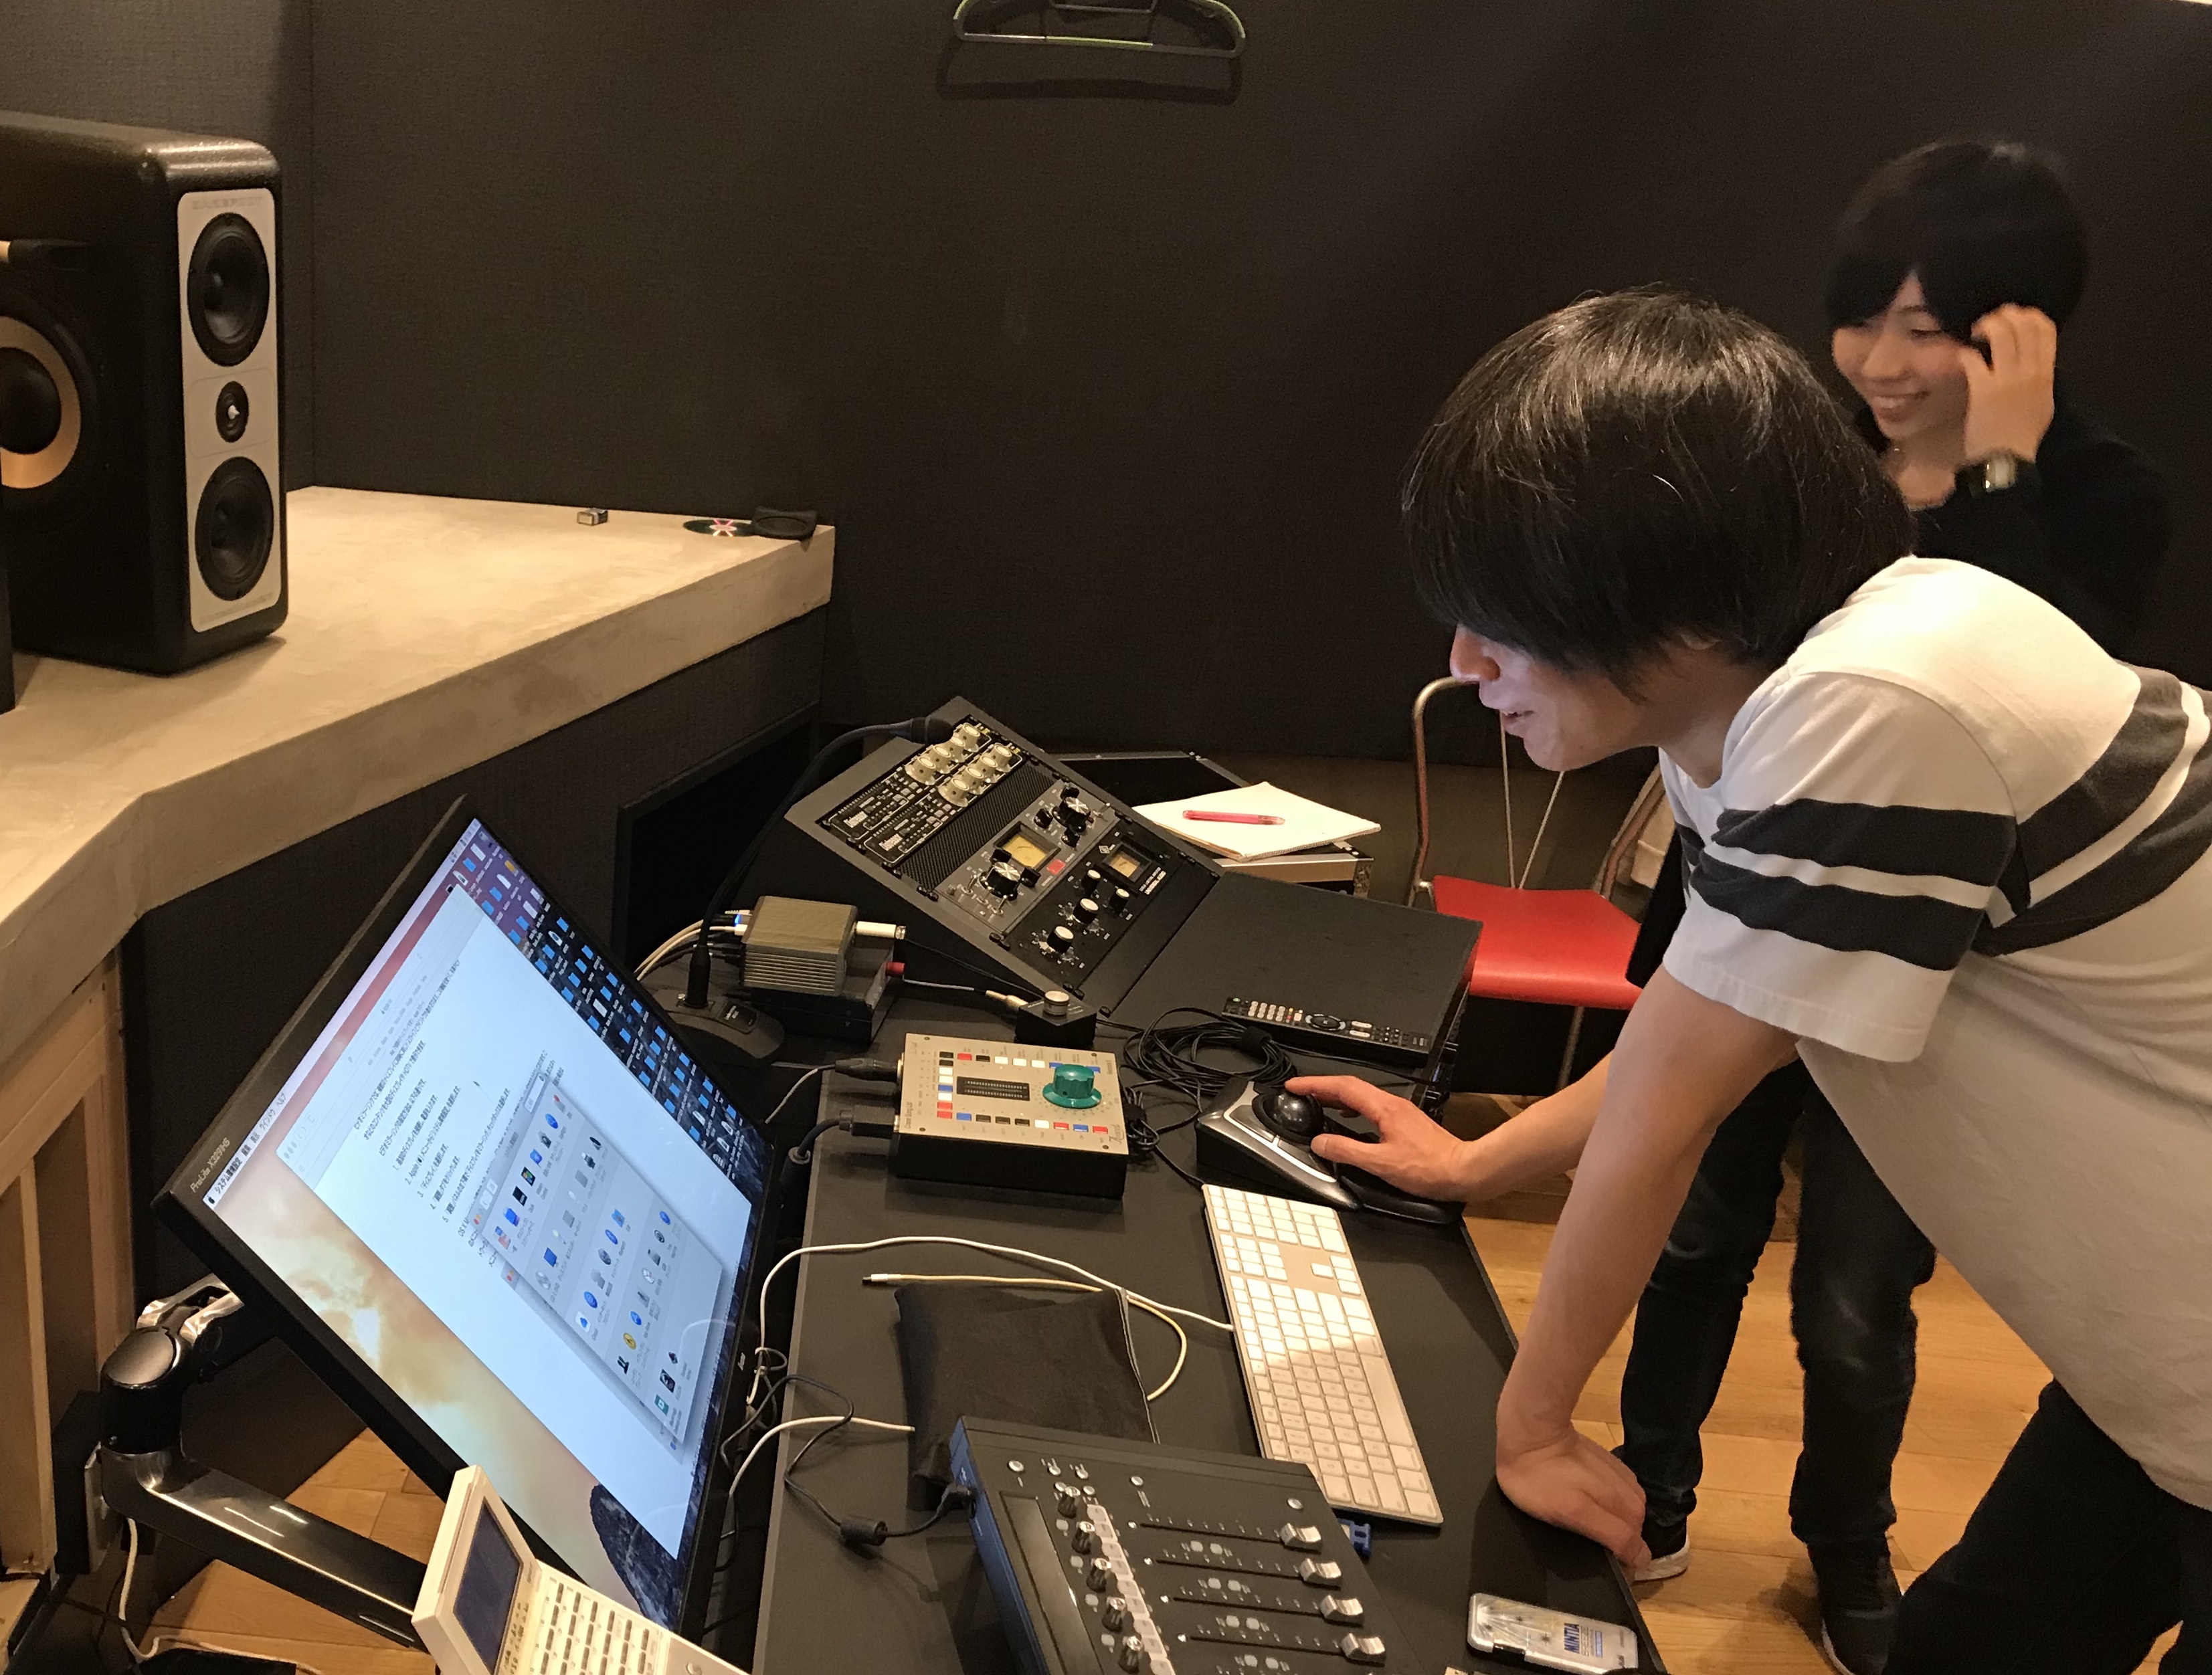 国立音楽院レコーディングスタジオでパソコンを操作する吉崎拓郎講師と音響デザイン科の学生を横から撮影した写真。